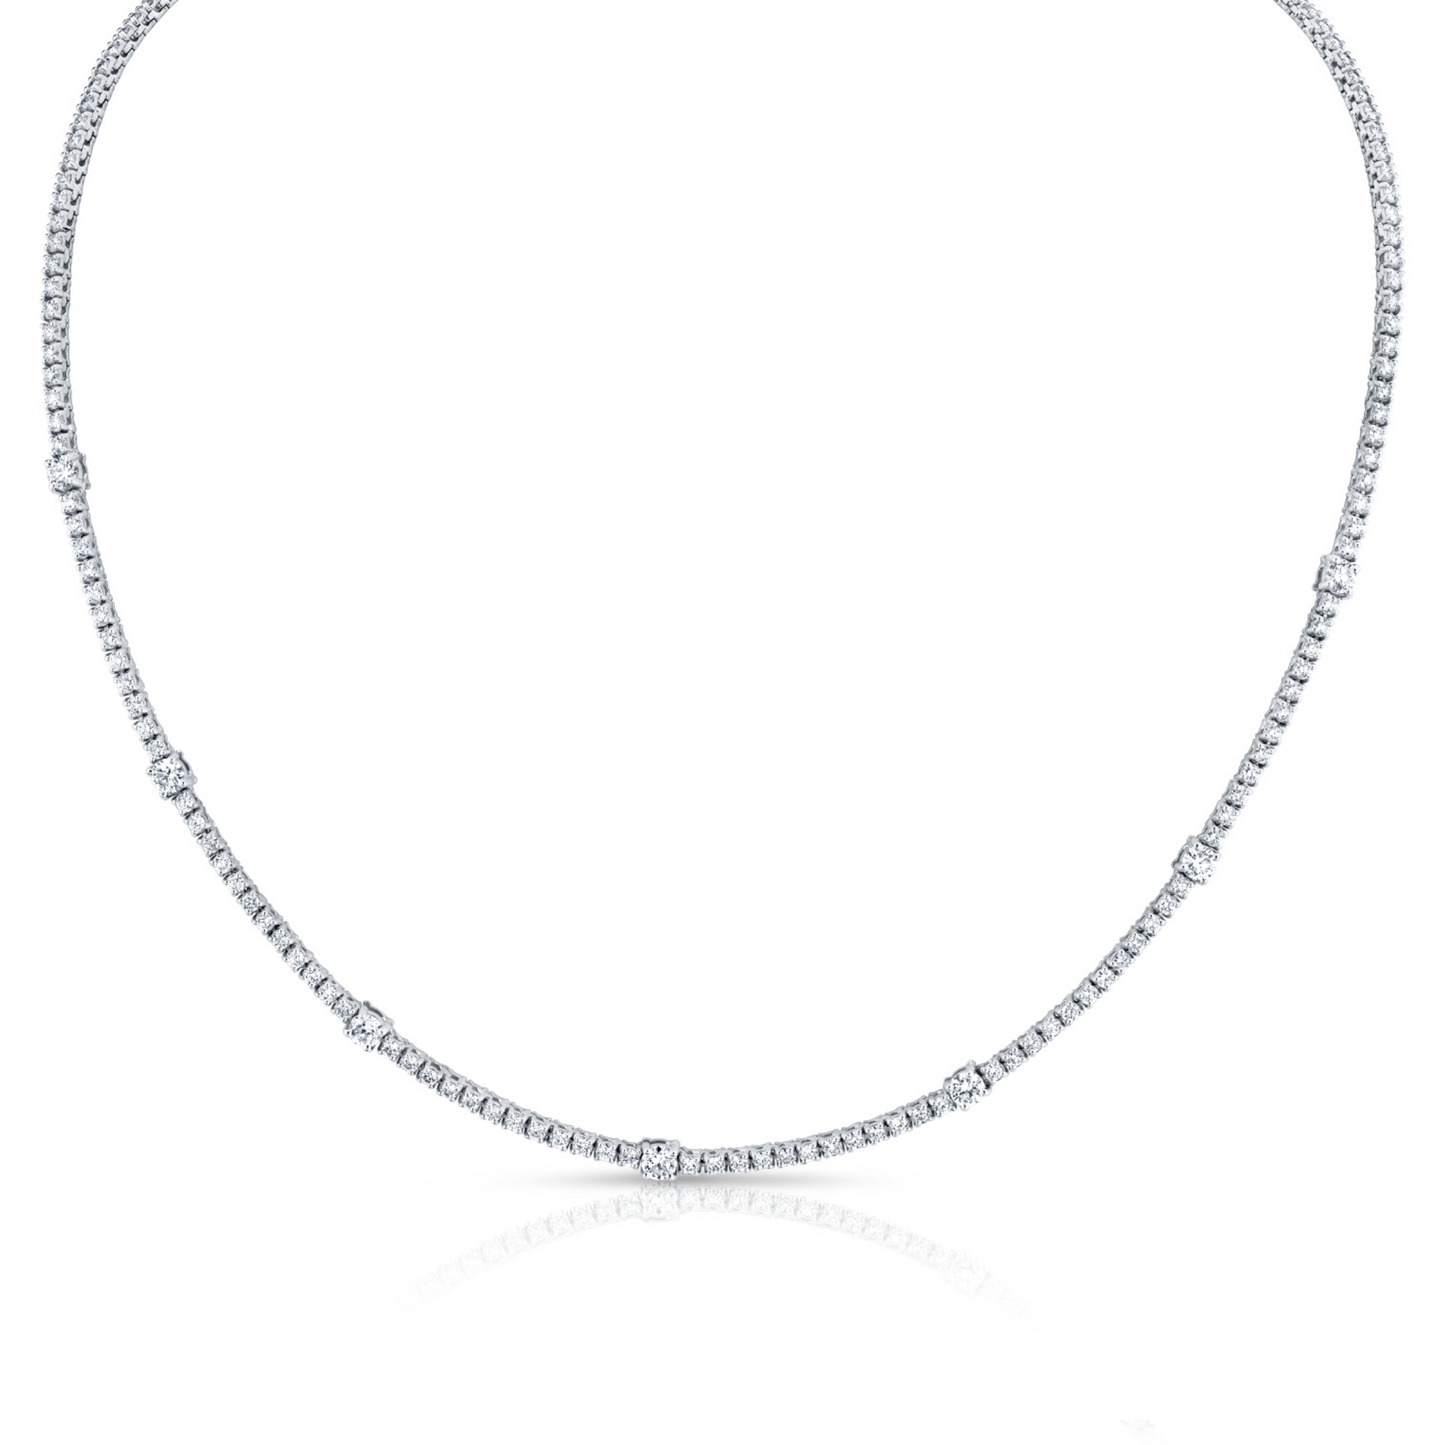 4.44 Carat Round Cut Diamond Necklace